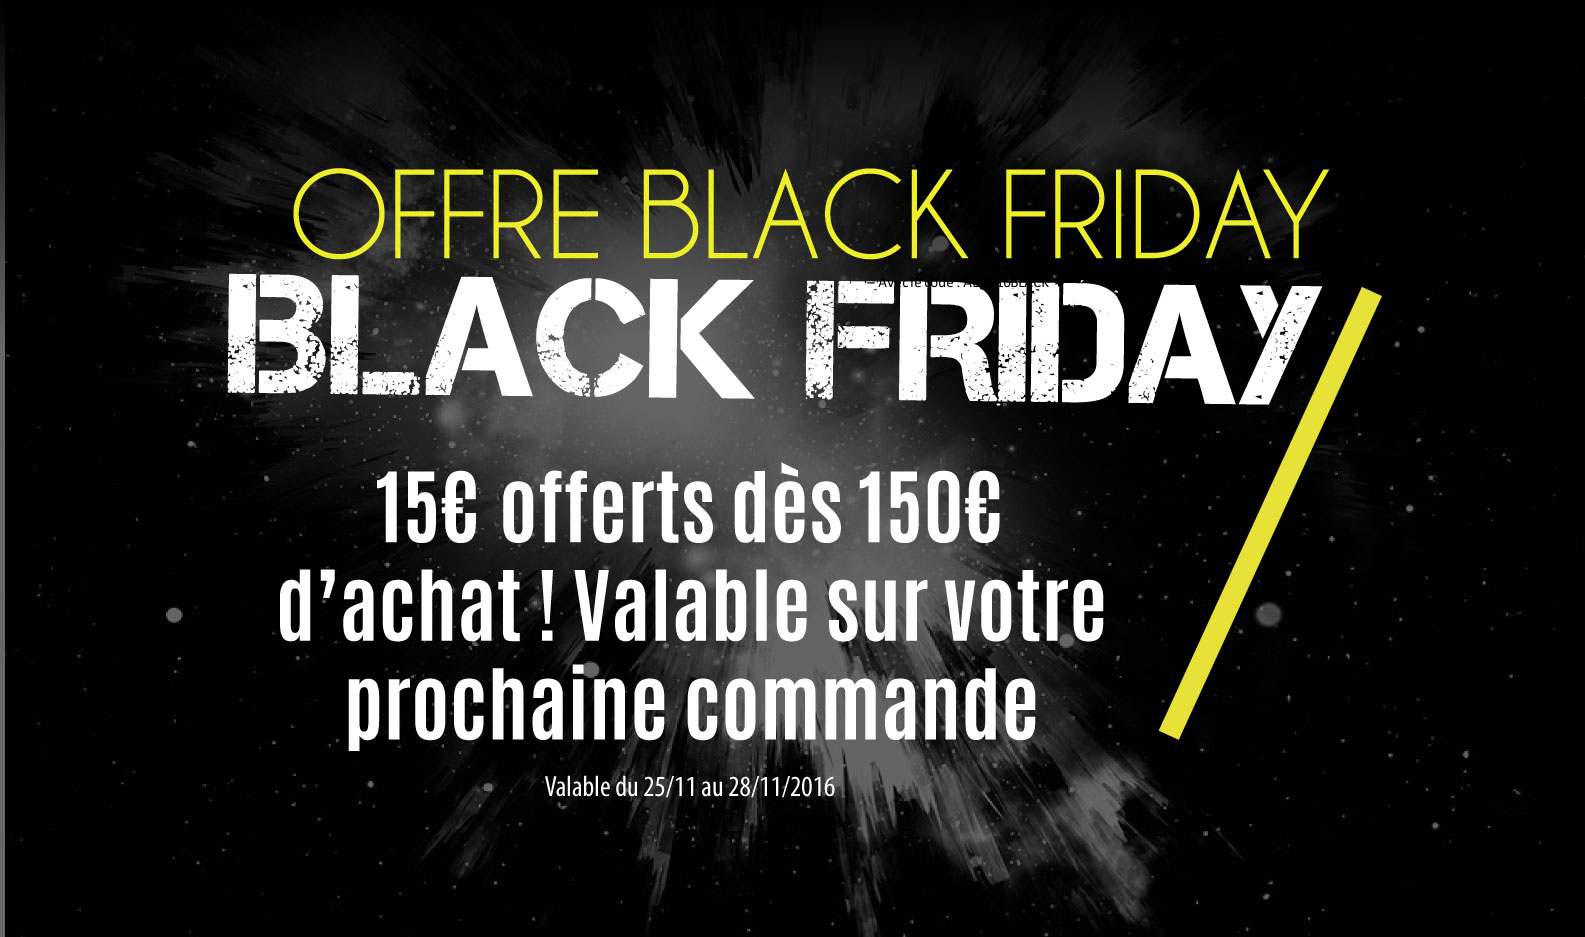 Opération Black Friday : 15€ offerts dès 150€ d'achat, valable sur votre prochaine commande